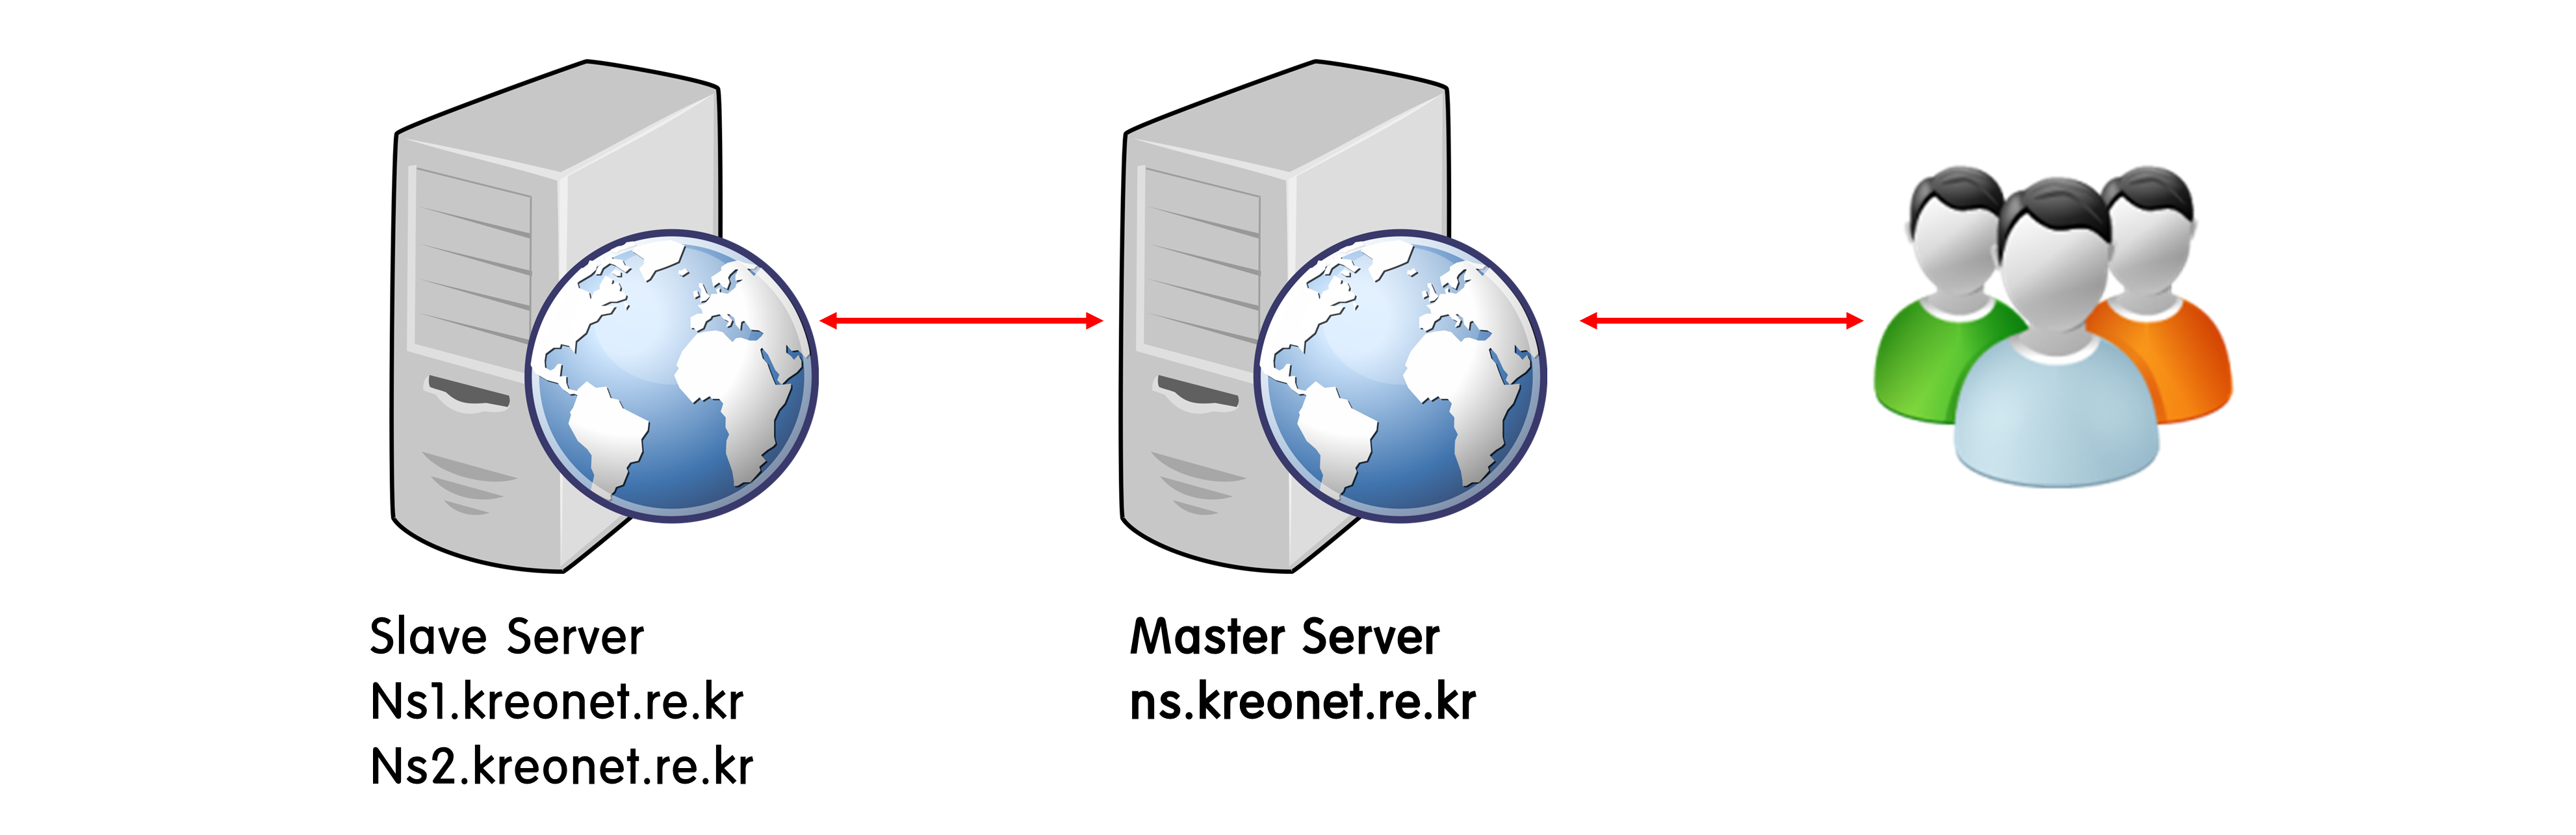 [Slave server] Ns1.kreonet.re.kr, Ns2.kreonet.re.kr↔[Master Server] ns.kreonet.re.kr↔사용자